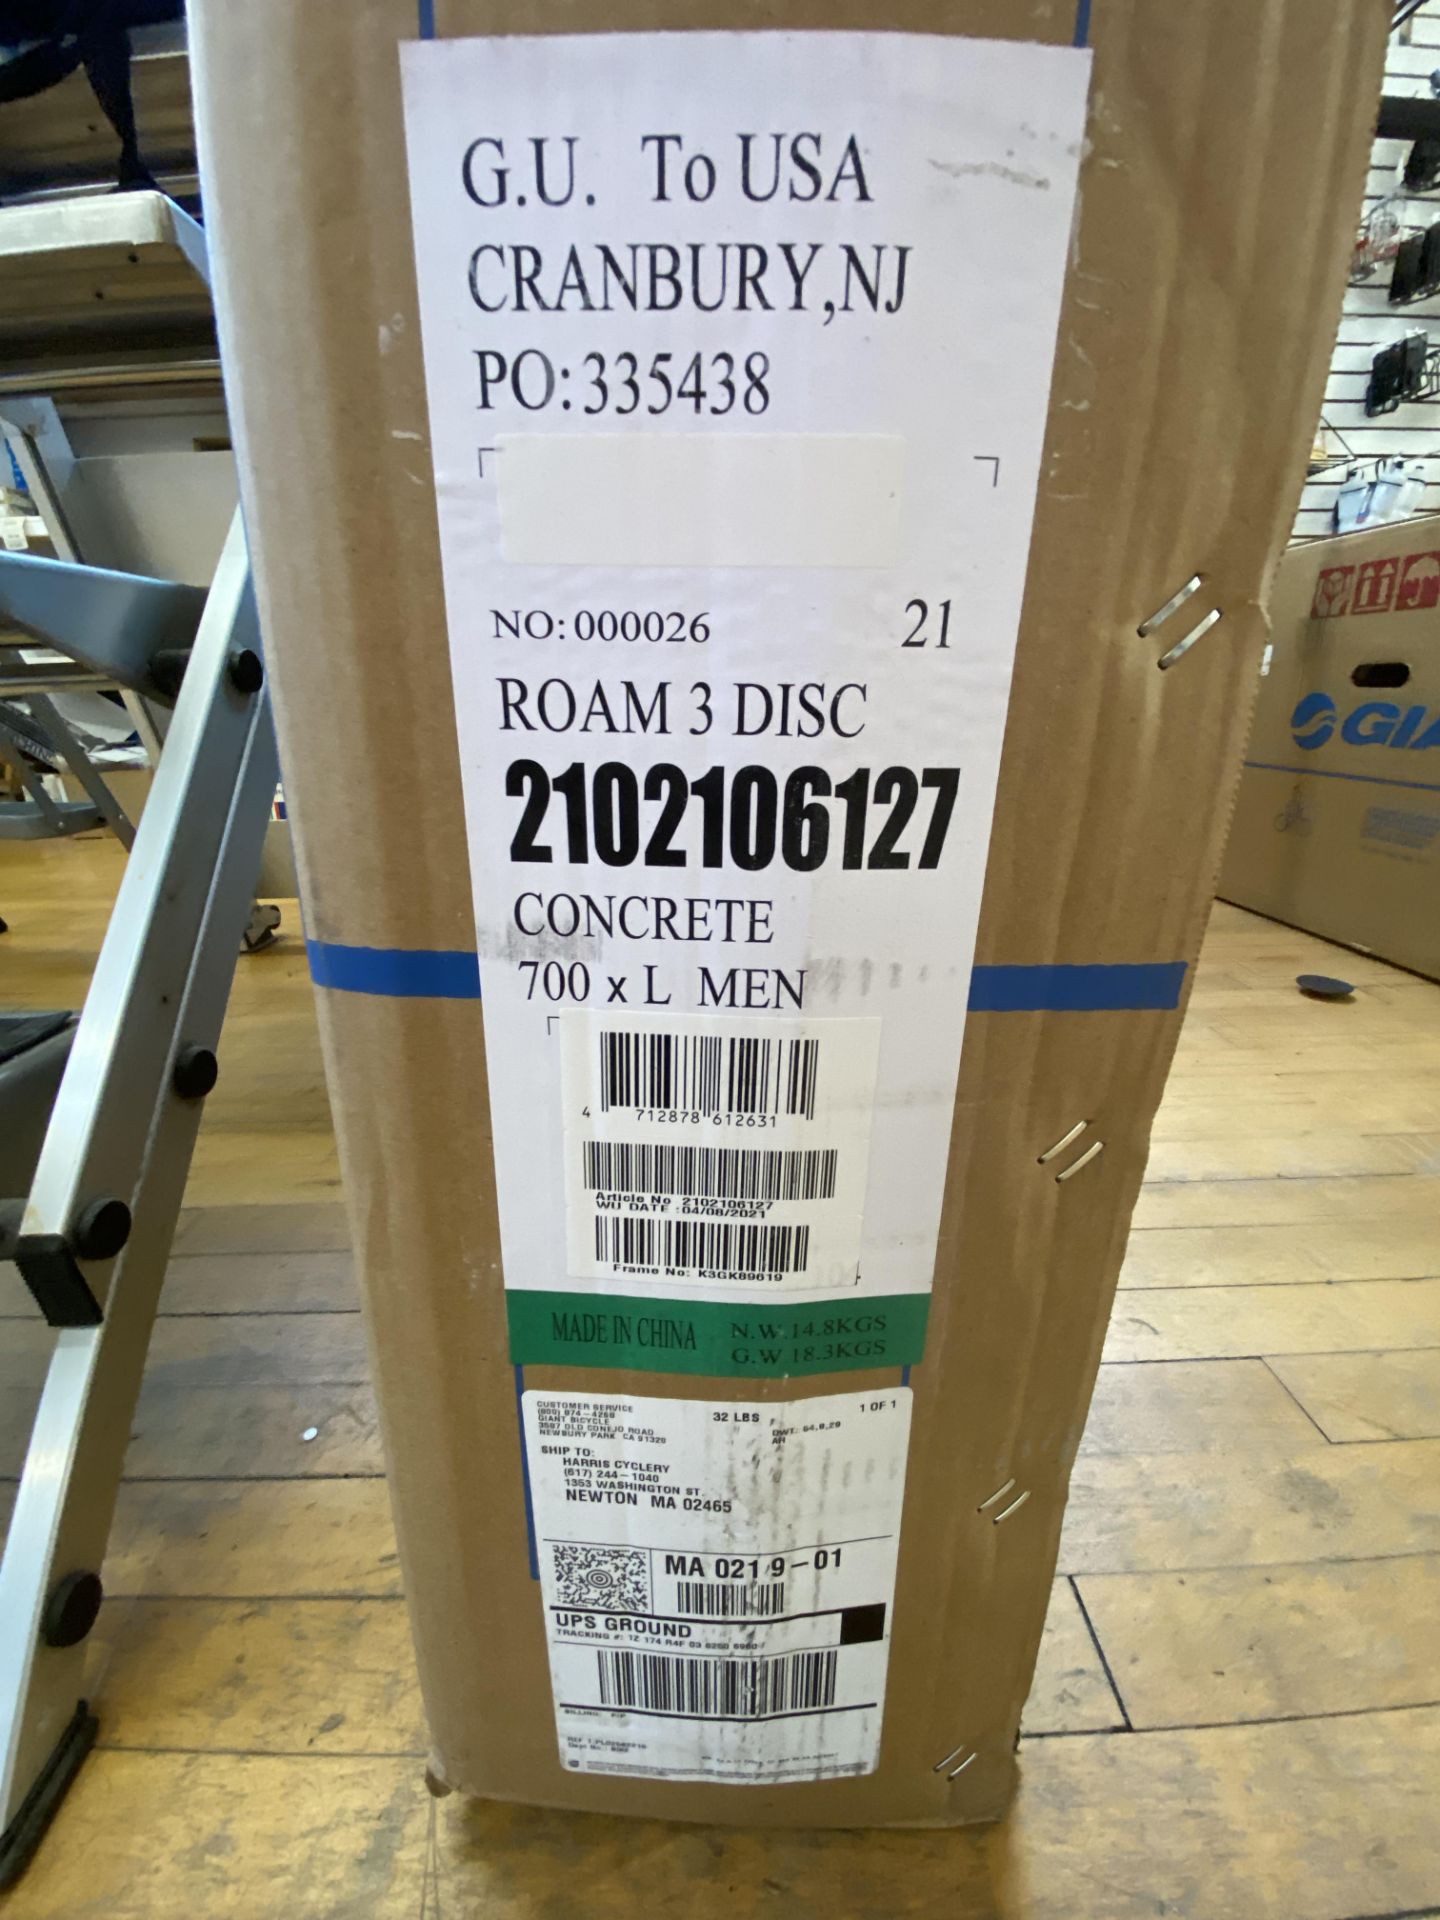 Giant Roam # Disk 700 XL Men Concrete NIB $680 Retail